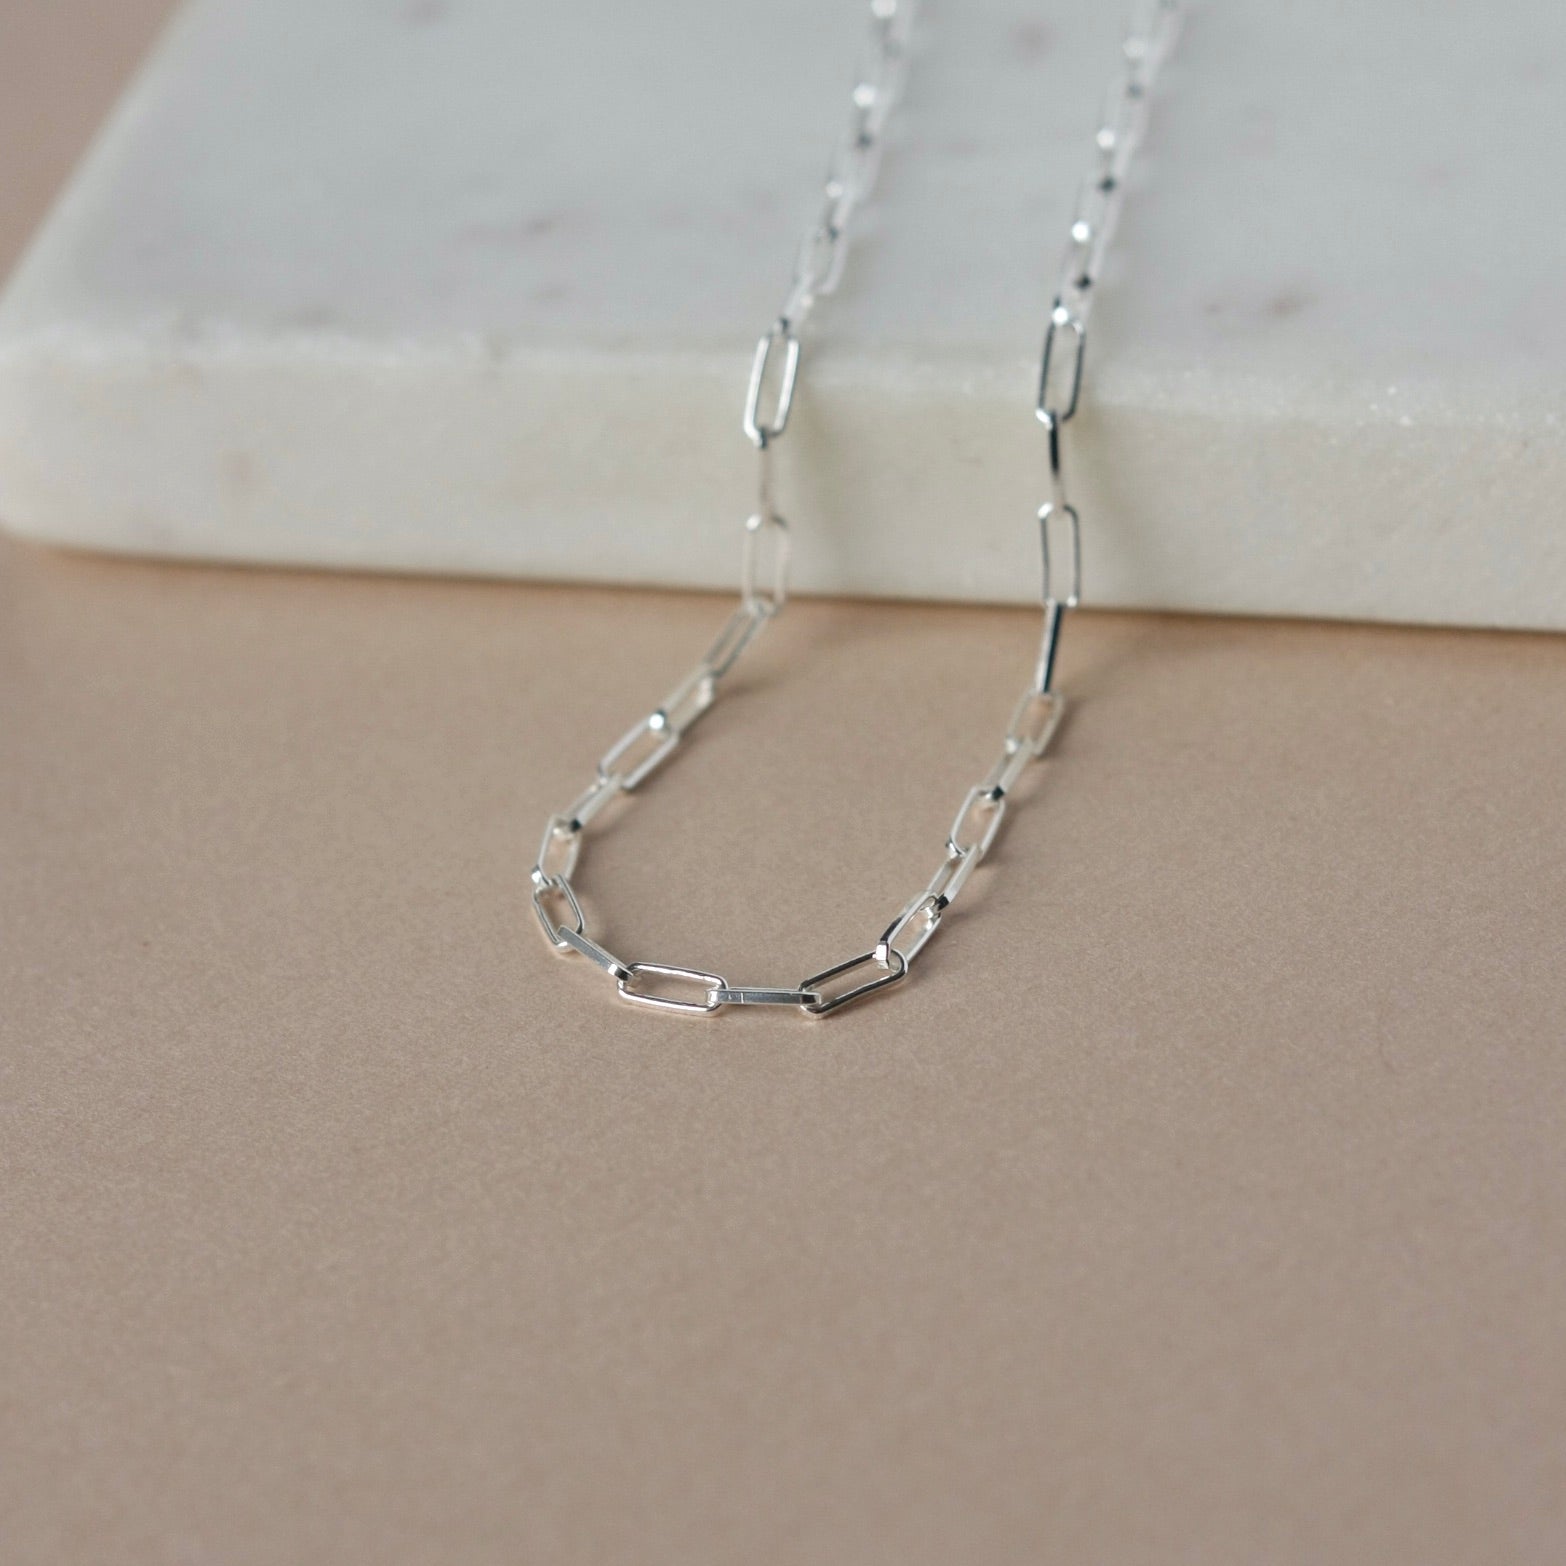 Small Silver Paper Clip Chain Necklace